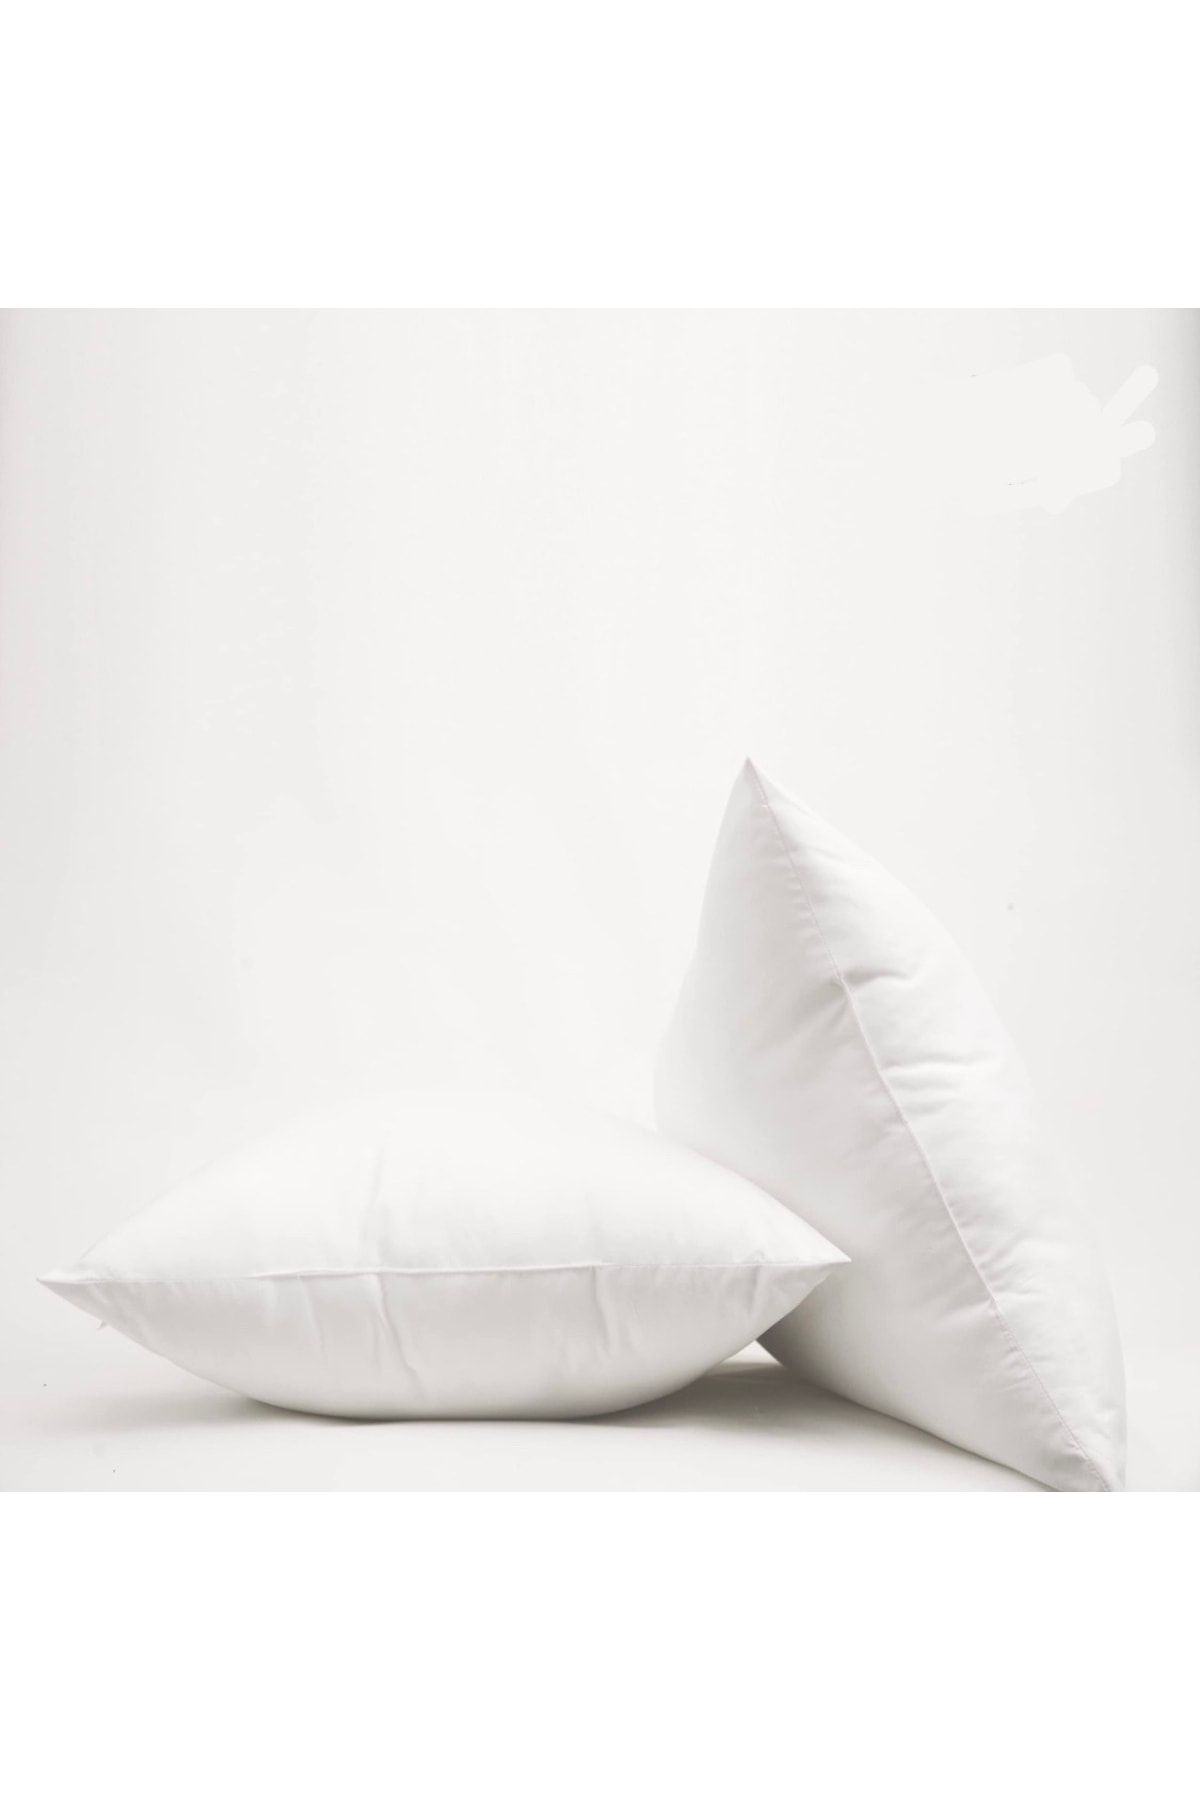 İzgi Concept Premium Orta Sert 2li Set Silikon Yastık 50x70 Uyku Yastığı Otel Yastığı 800gr Silikon Elyaf Dolgu